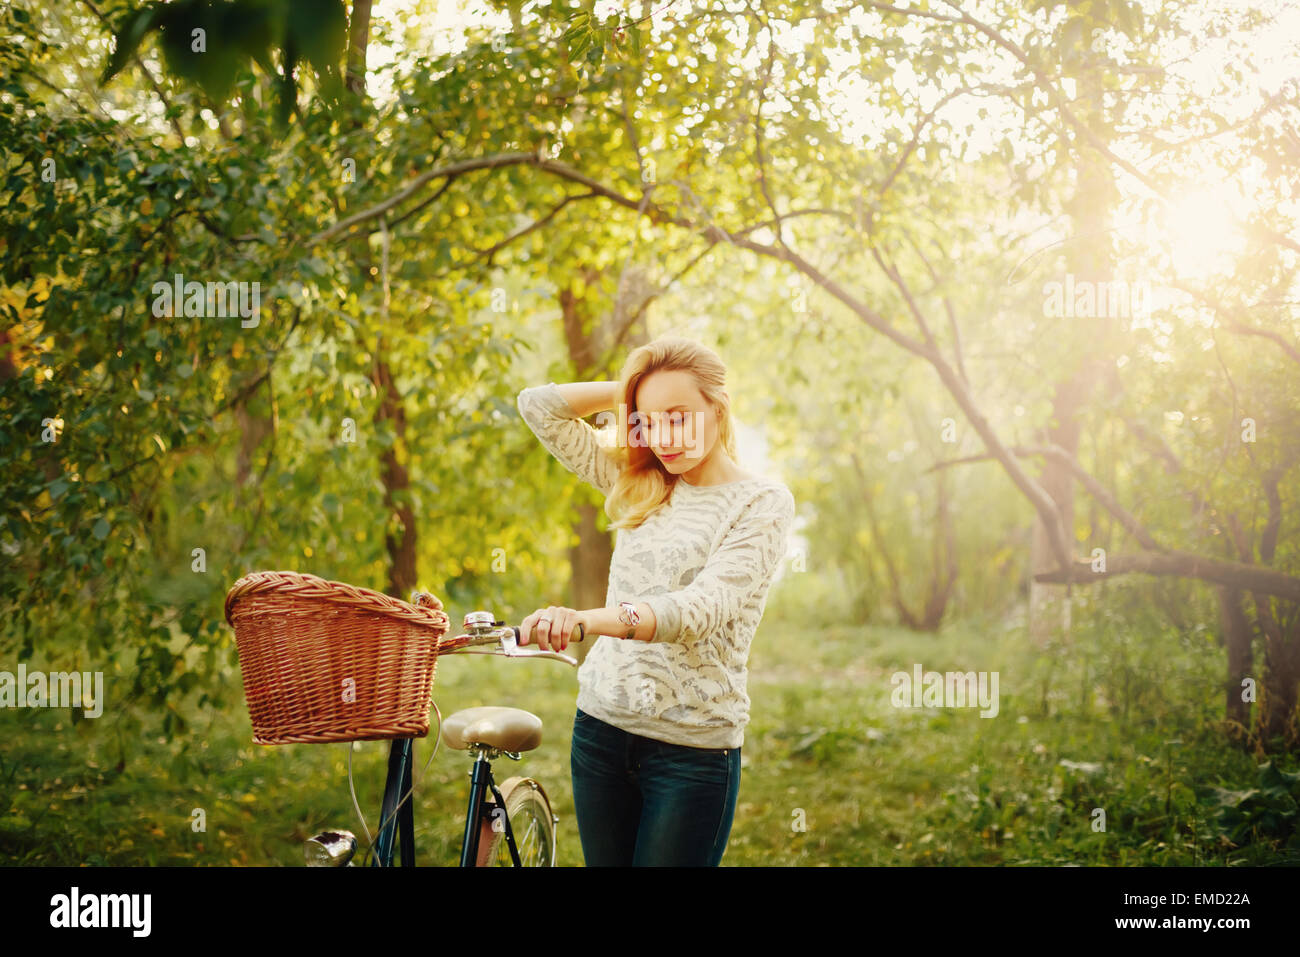 Junge blonde schöne Frau auf einem Vintage Fahrrad im Park. Hipster-Stil. Korn für besten Eindruck hinzugefügt. Stockfoto